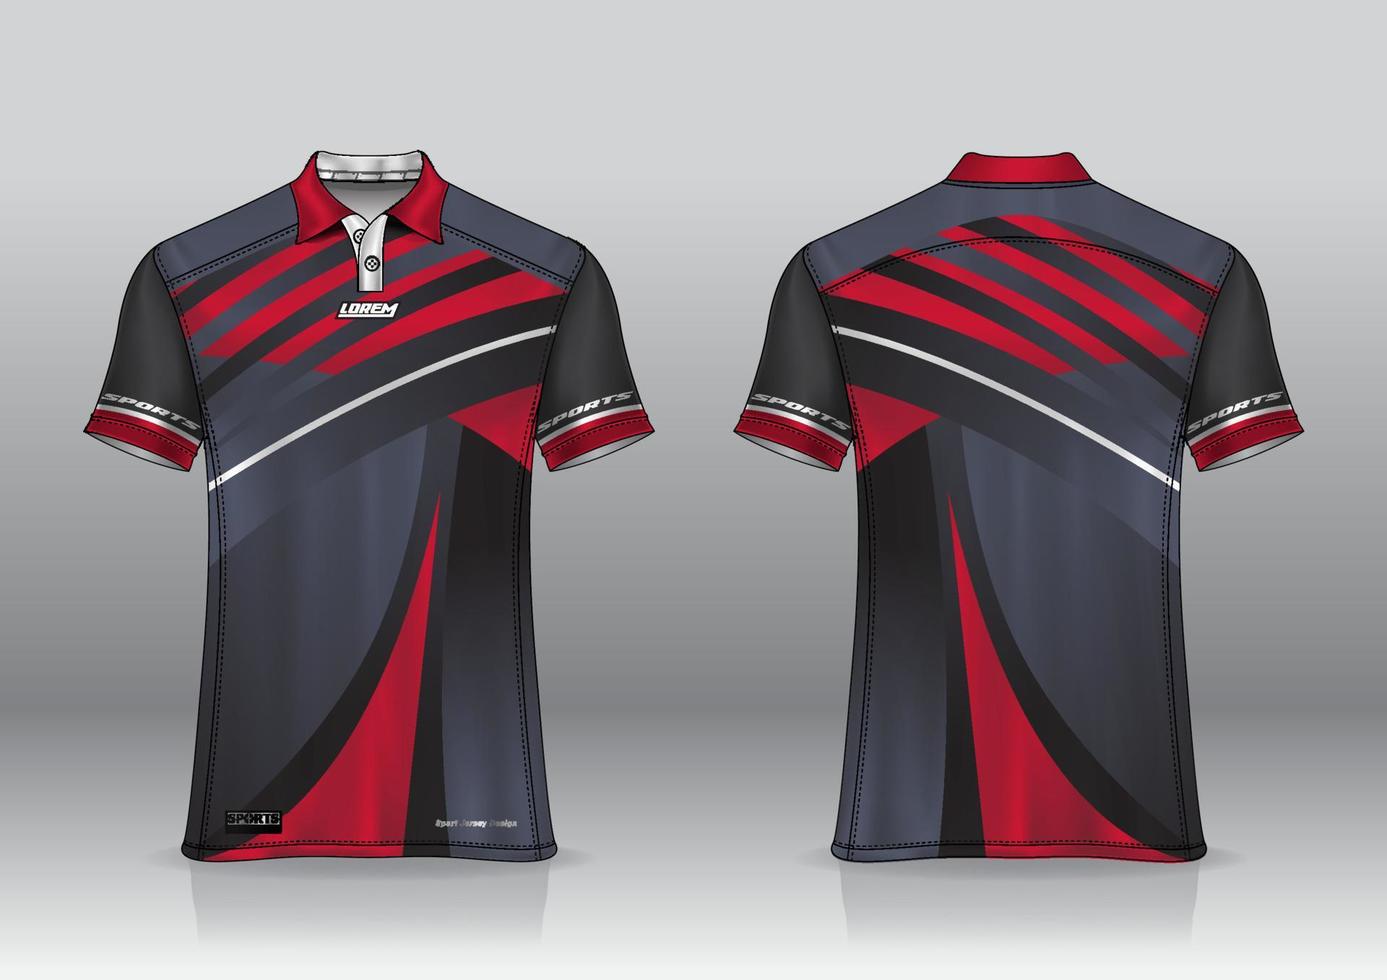 polo shirt uniform design for outdoor sports 8028467 Vector Art at Vecteezy